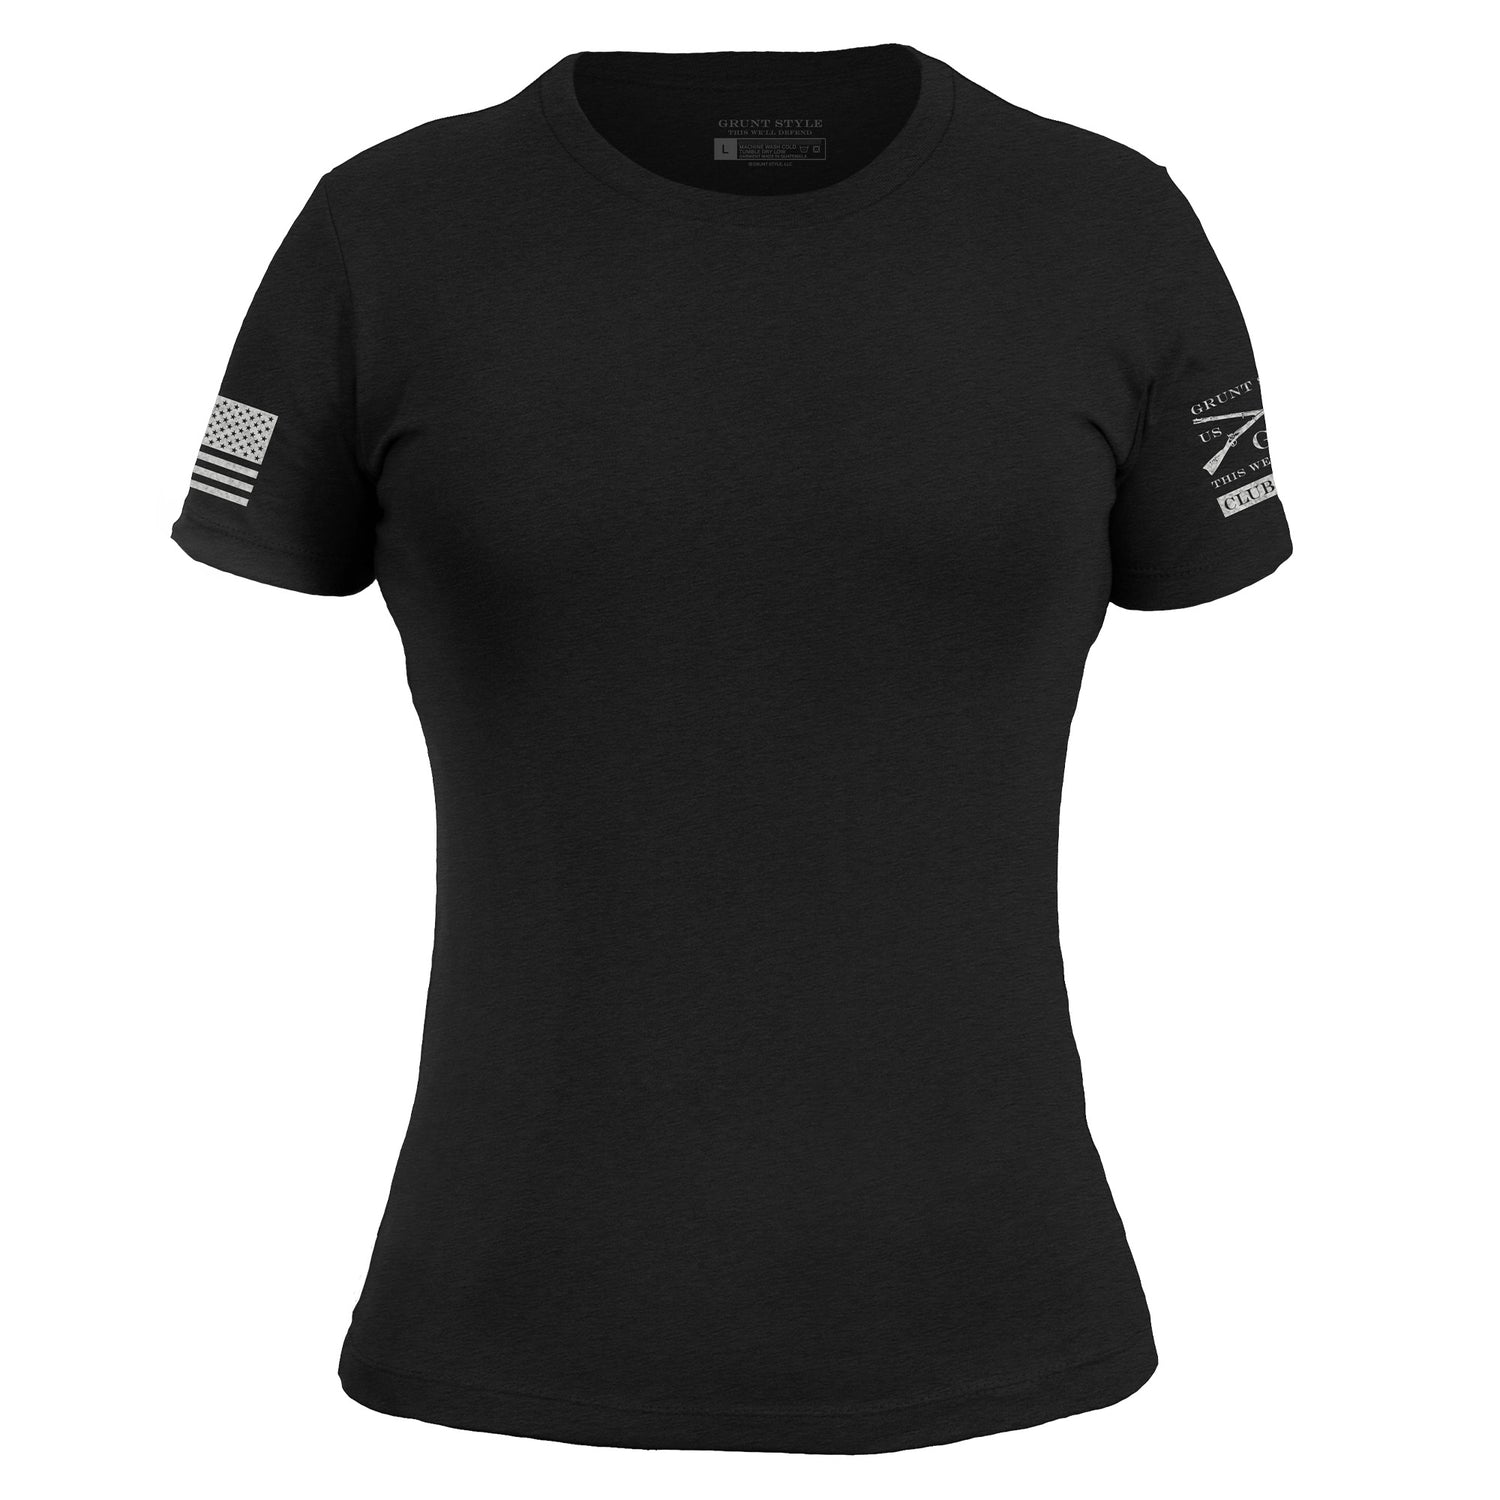 Club Shirt - Women's Black T-Shirt 